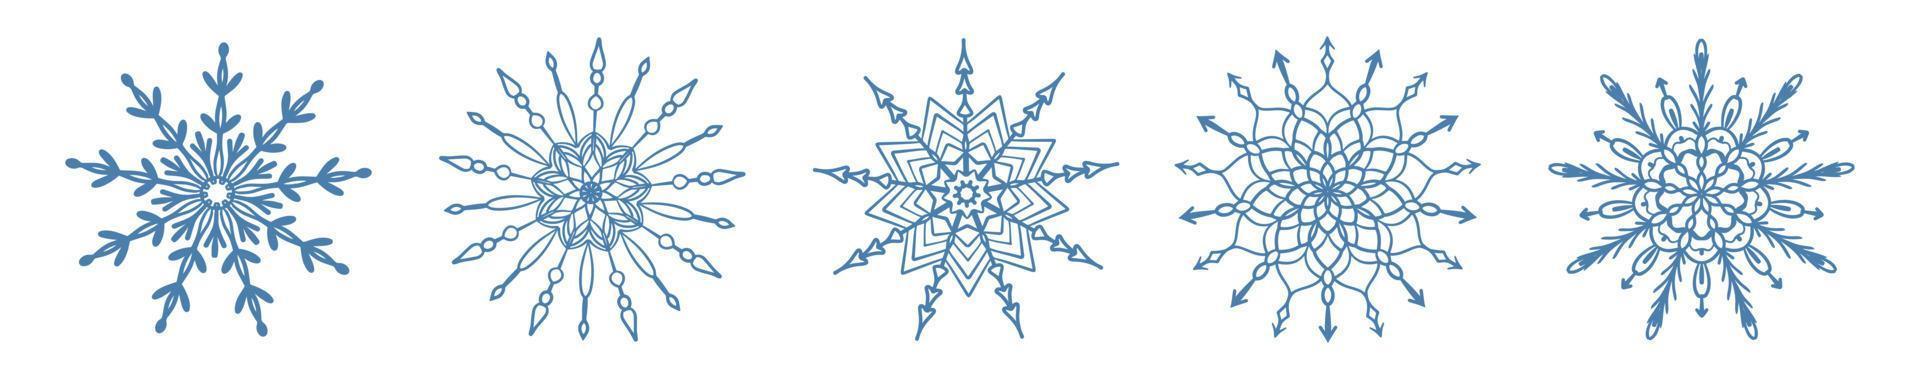 ensemble d'icône de flocon de neige bleu dessiné à la main isolé sur fond blanc. Élément de conception d'hiver collection d'illustrations vectorielles en cristal de gel de flocon de neige. vecteur